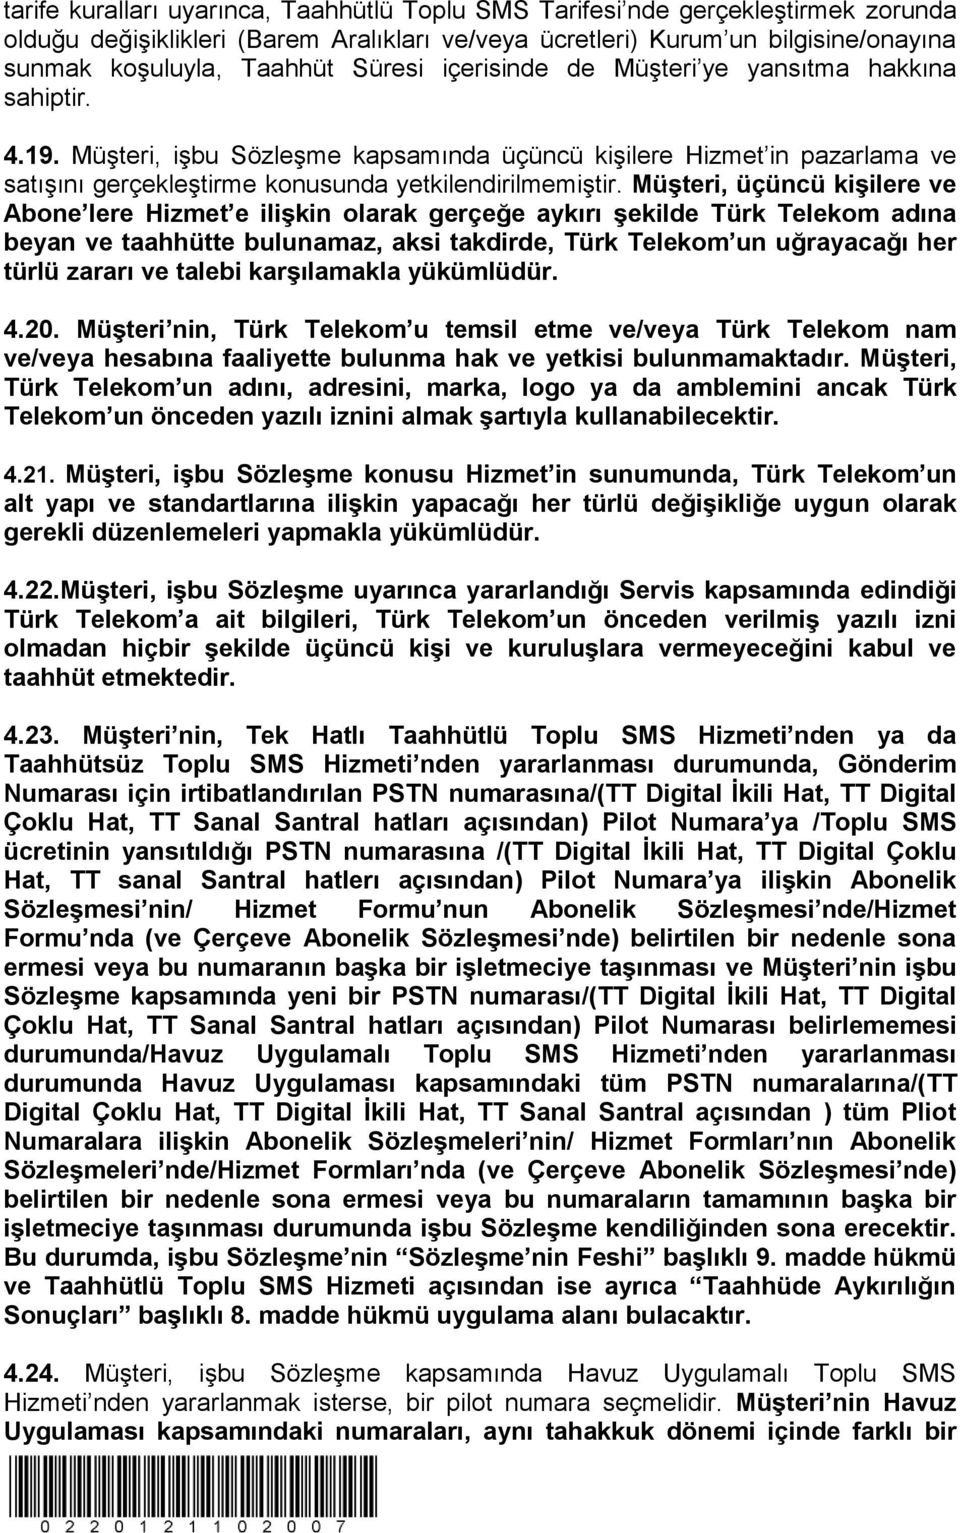 MüĢteri, üçüncü kiģilere ve Abone lere Hizmet e iliģkin olarak gerçeğe aykırı Ģekilde Türk Telekom adına beyan ve taahhütte bulunamaz, aksi takdirde, Türk Telekom un uğrayacağı her türlü zararı ve